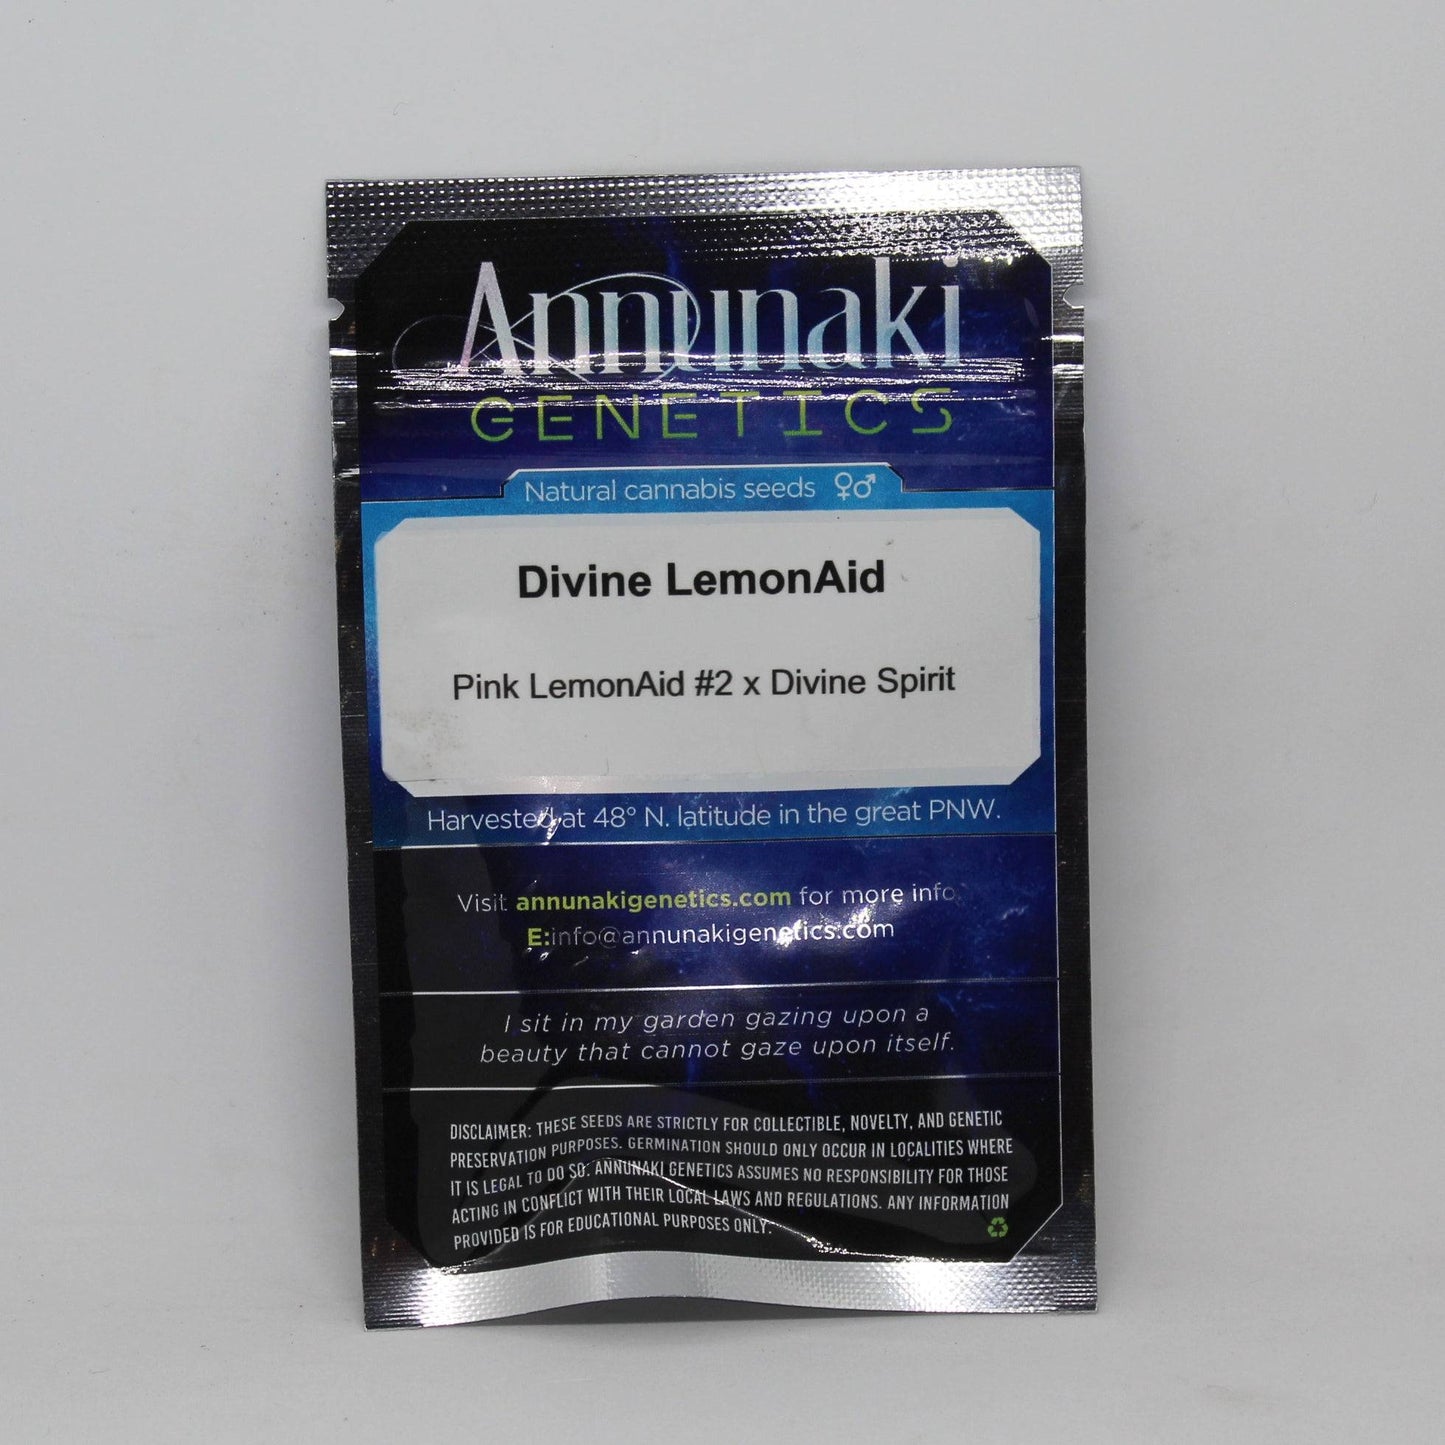 Divine LemonAid - Pink LemonAid #2 x Divine Spirit